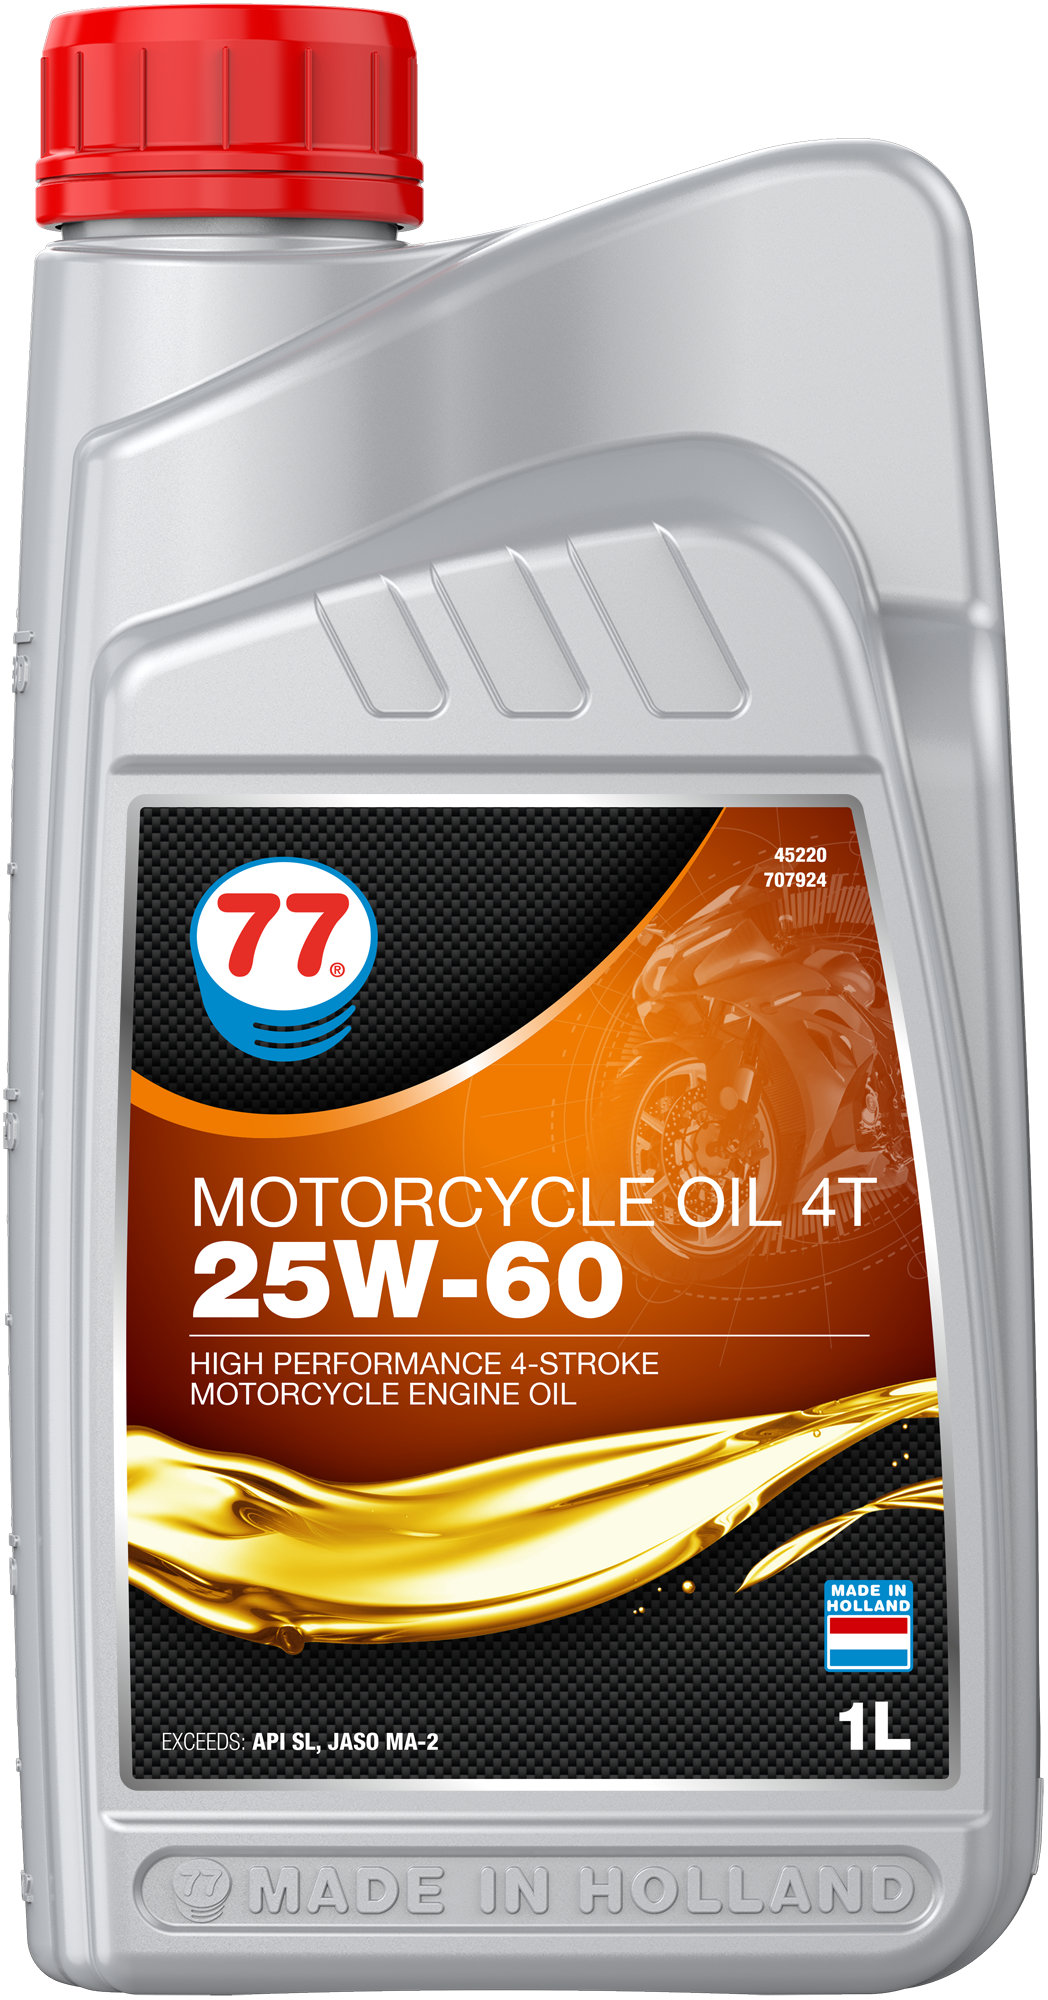 4522-1 Motorcycle Oil 4T 25W-60 is een krachtige minerale motorolie speciaal ontwikkeld voor gebruik in lucht-, olie- en watergekoelde 4-takt motorfietsen om een uitstekende bescherming te bieden tegen motor, versnellingsbak en natte koppelingen en zorgt voor de hoogst mogelijke betrouwbaarheid, zelfs onder de zwaarste bedrijfsomstandigheden.